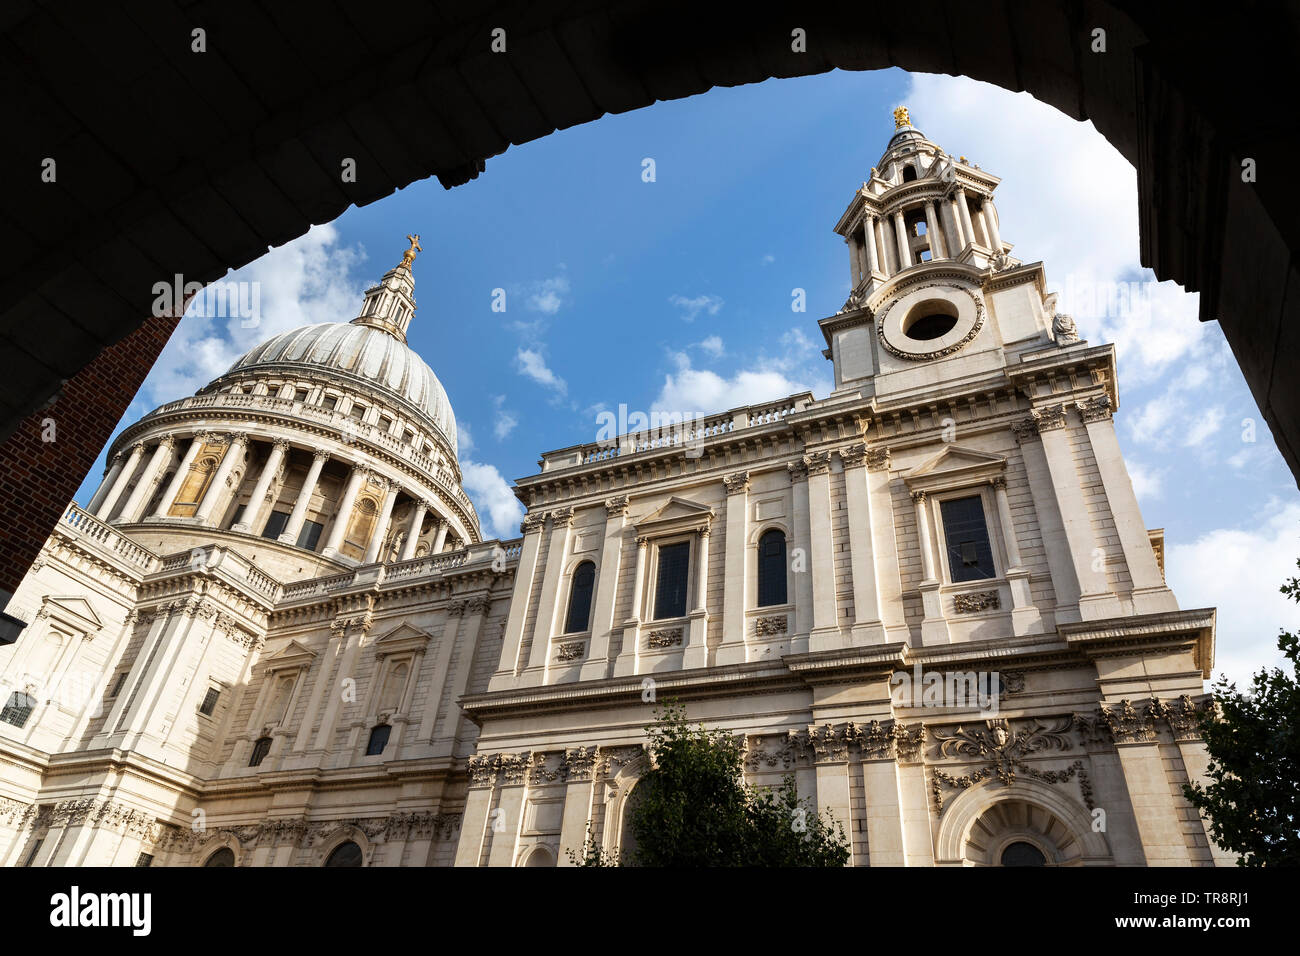 La Cathédrale de St Paul, vu à travers la voûte de Temple Bar dans la ville de Londres, Angleterre, Royaume-Uni. Banque D'Images